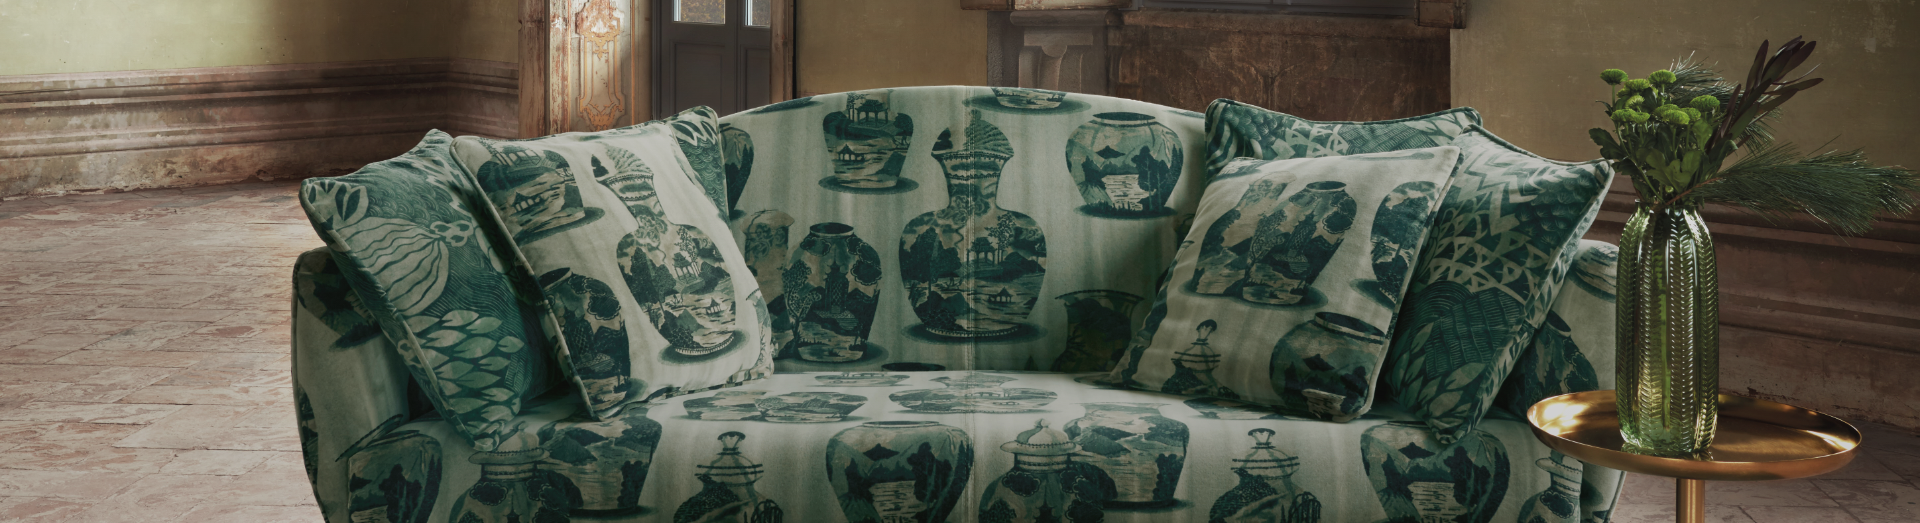 Latest sofa fabrics designs - Ikigai